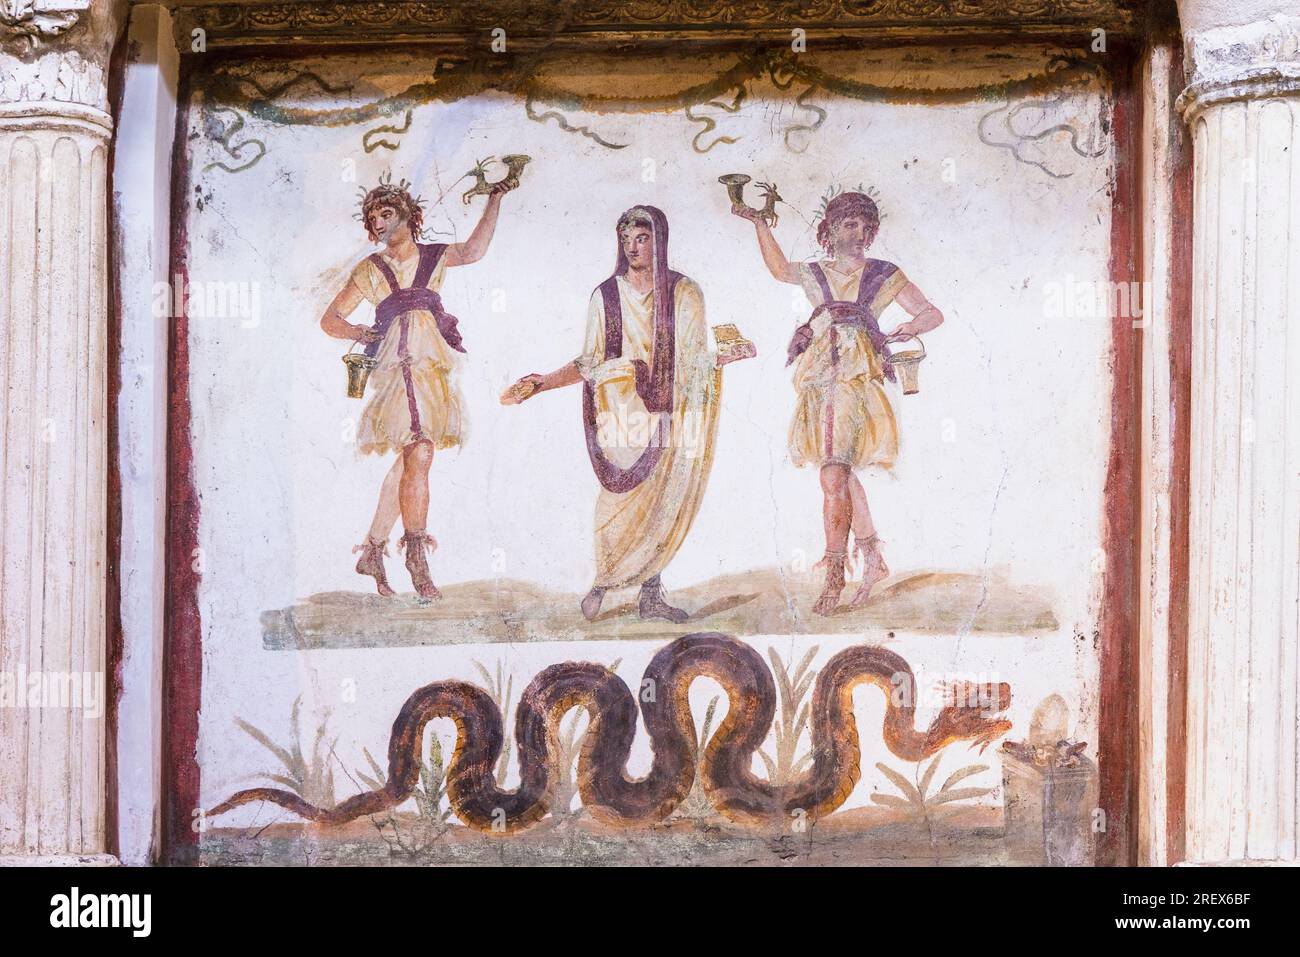 Sito archeologico di Pompei, Campania, Italia. Lararium, o santuario, che mostra varie divinità domestiche. Casa dei Vettii. Casa dei Vettii. Pompe Foto Stock